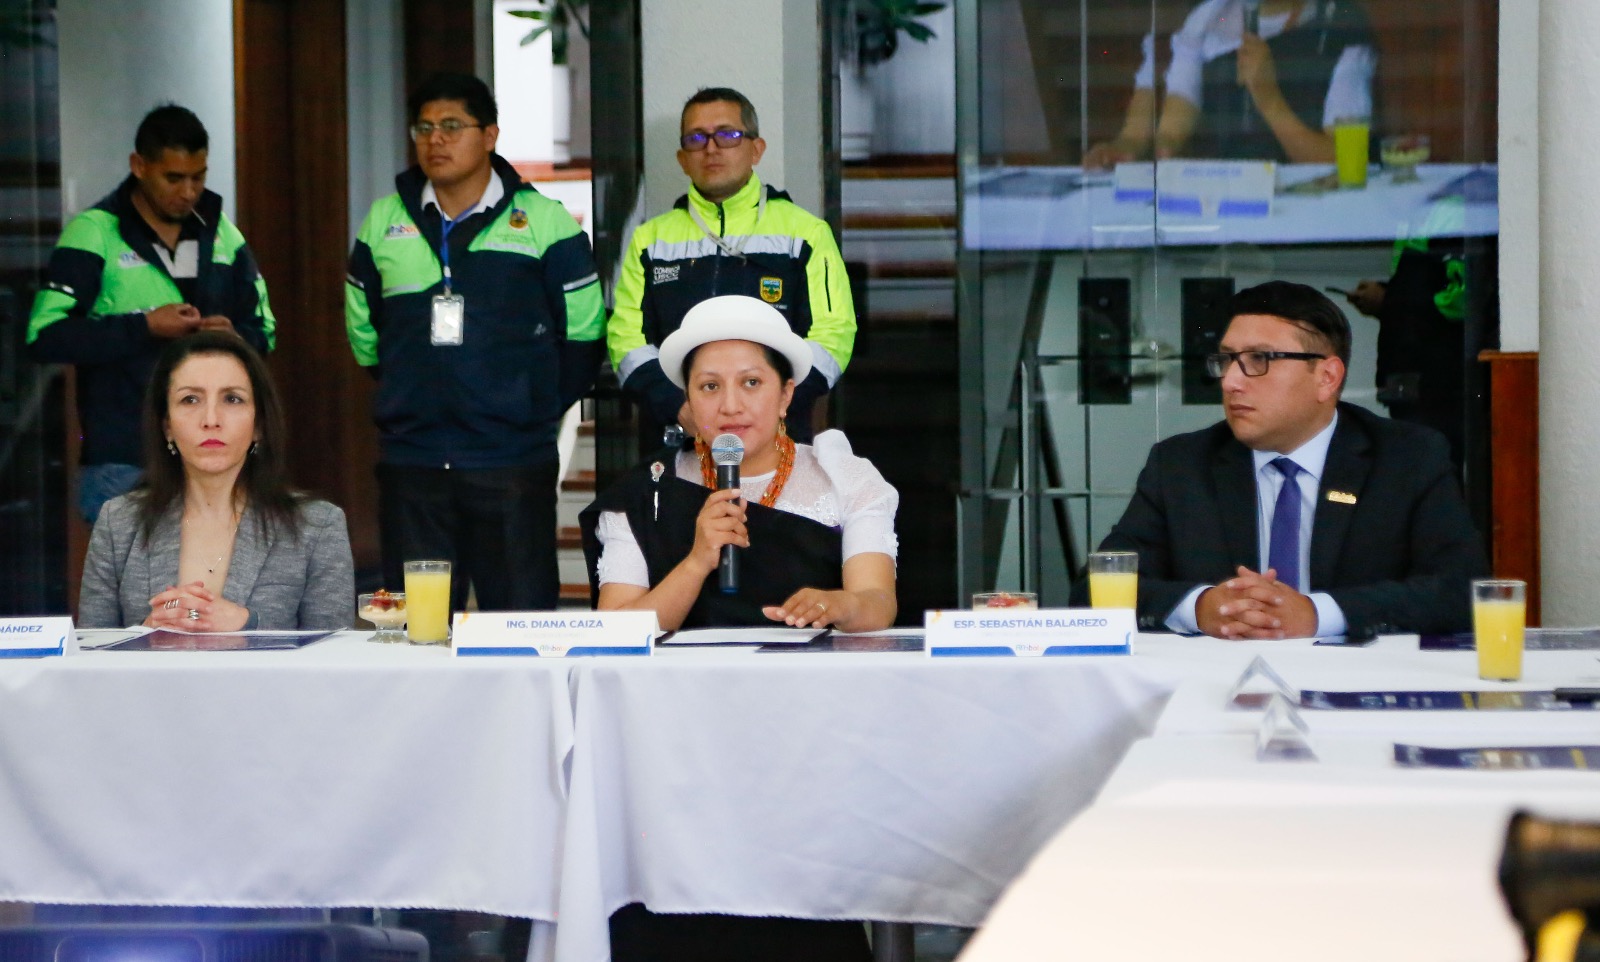 La alcaldesa Diana Caiza dio detalles de este encuentro internacional.